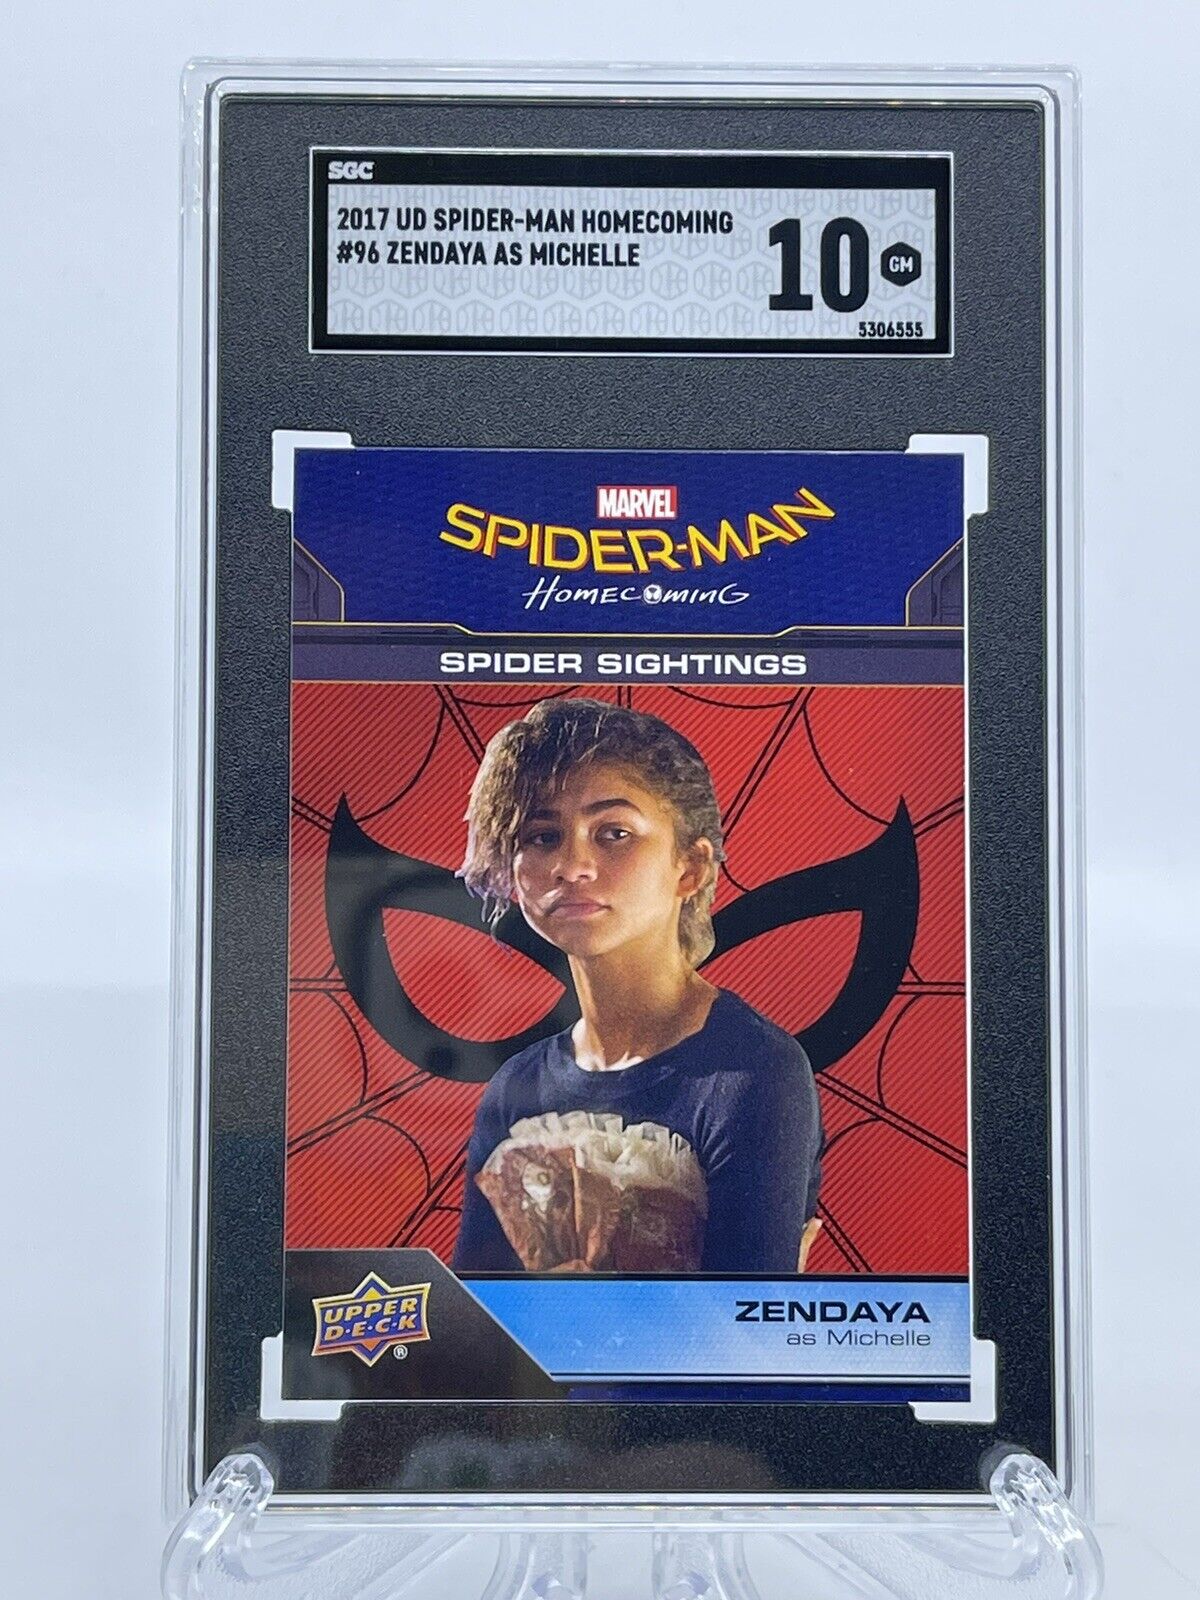 2017 Upper Deck Marvel Spider-Man Homecoming #96 Zendaya Michelle SGC 10 GEM rc